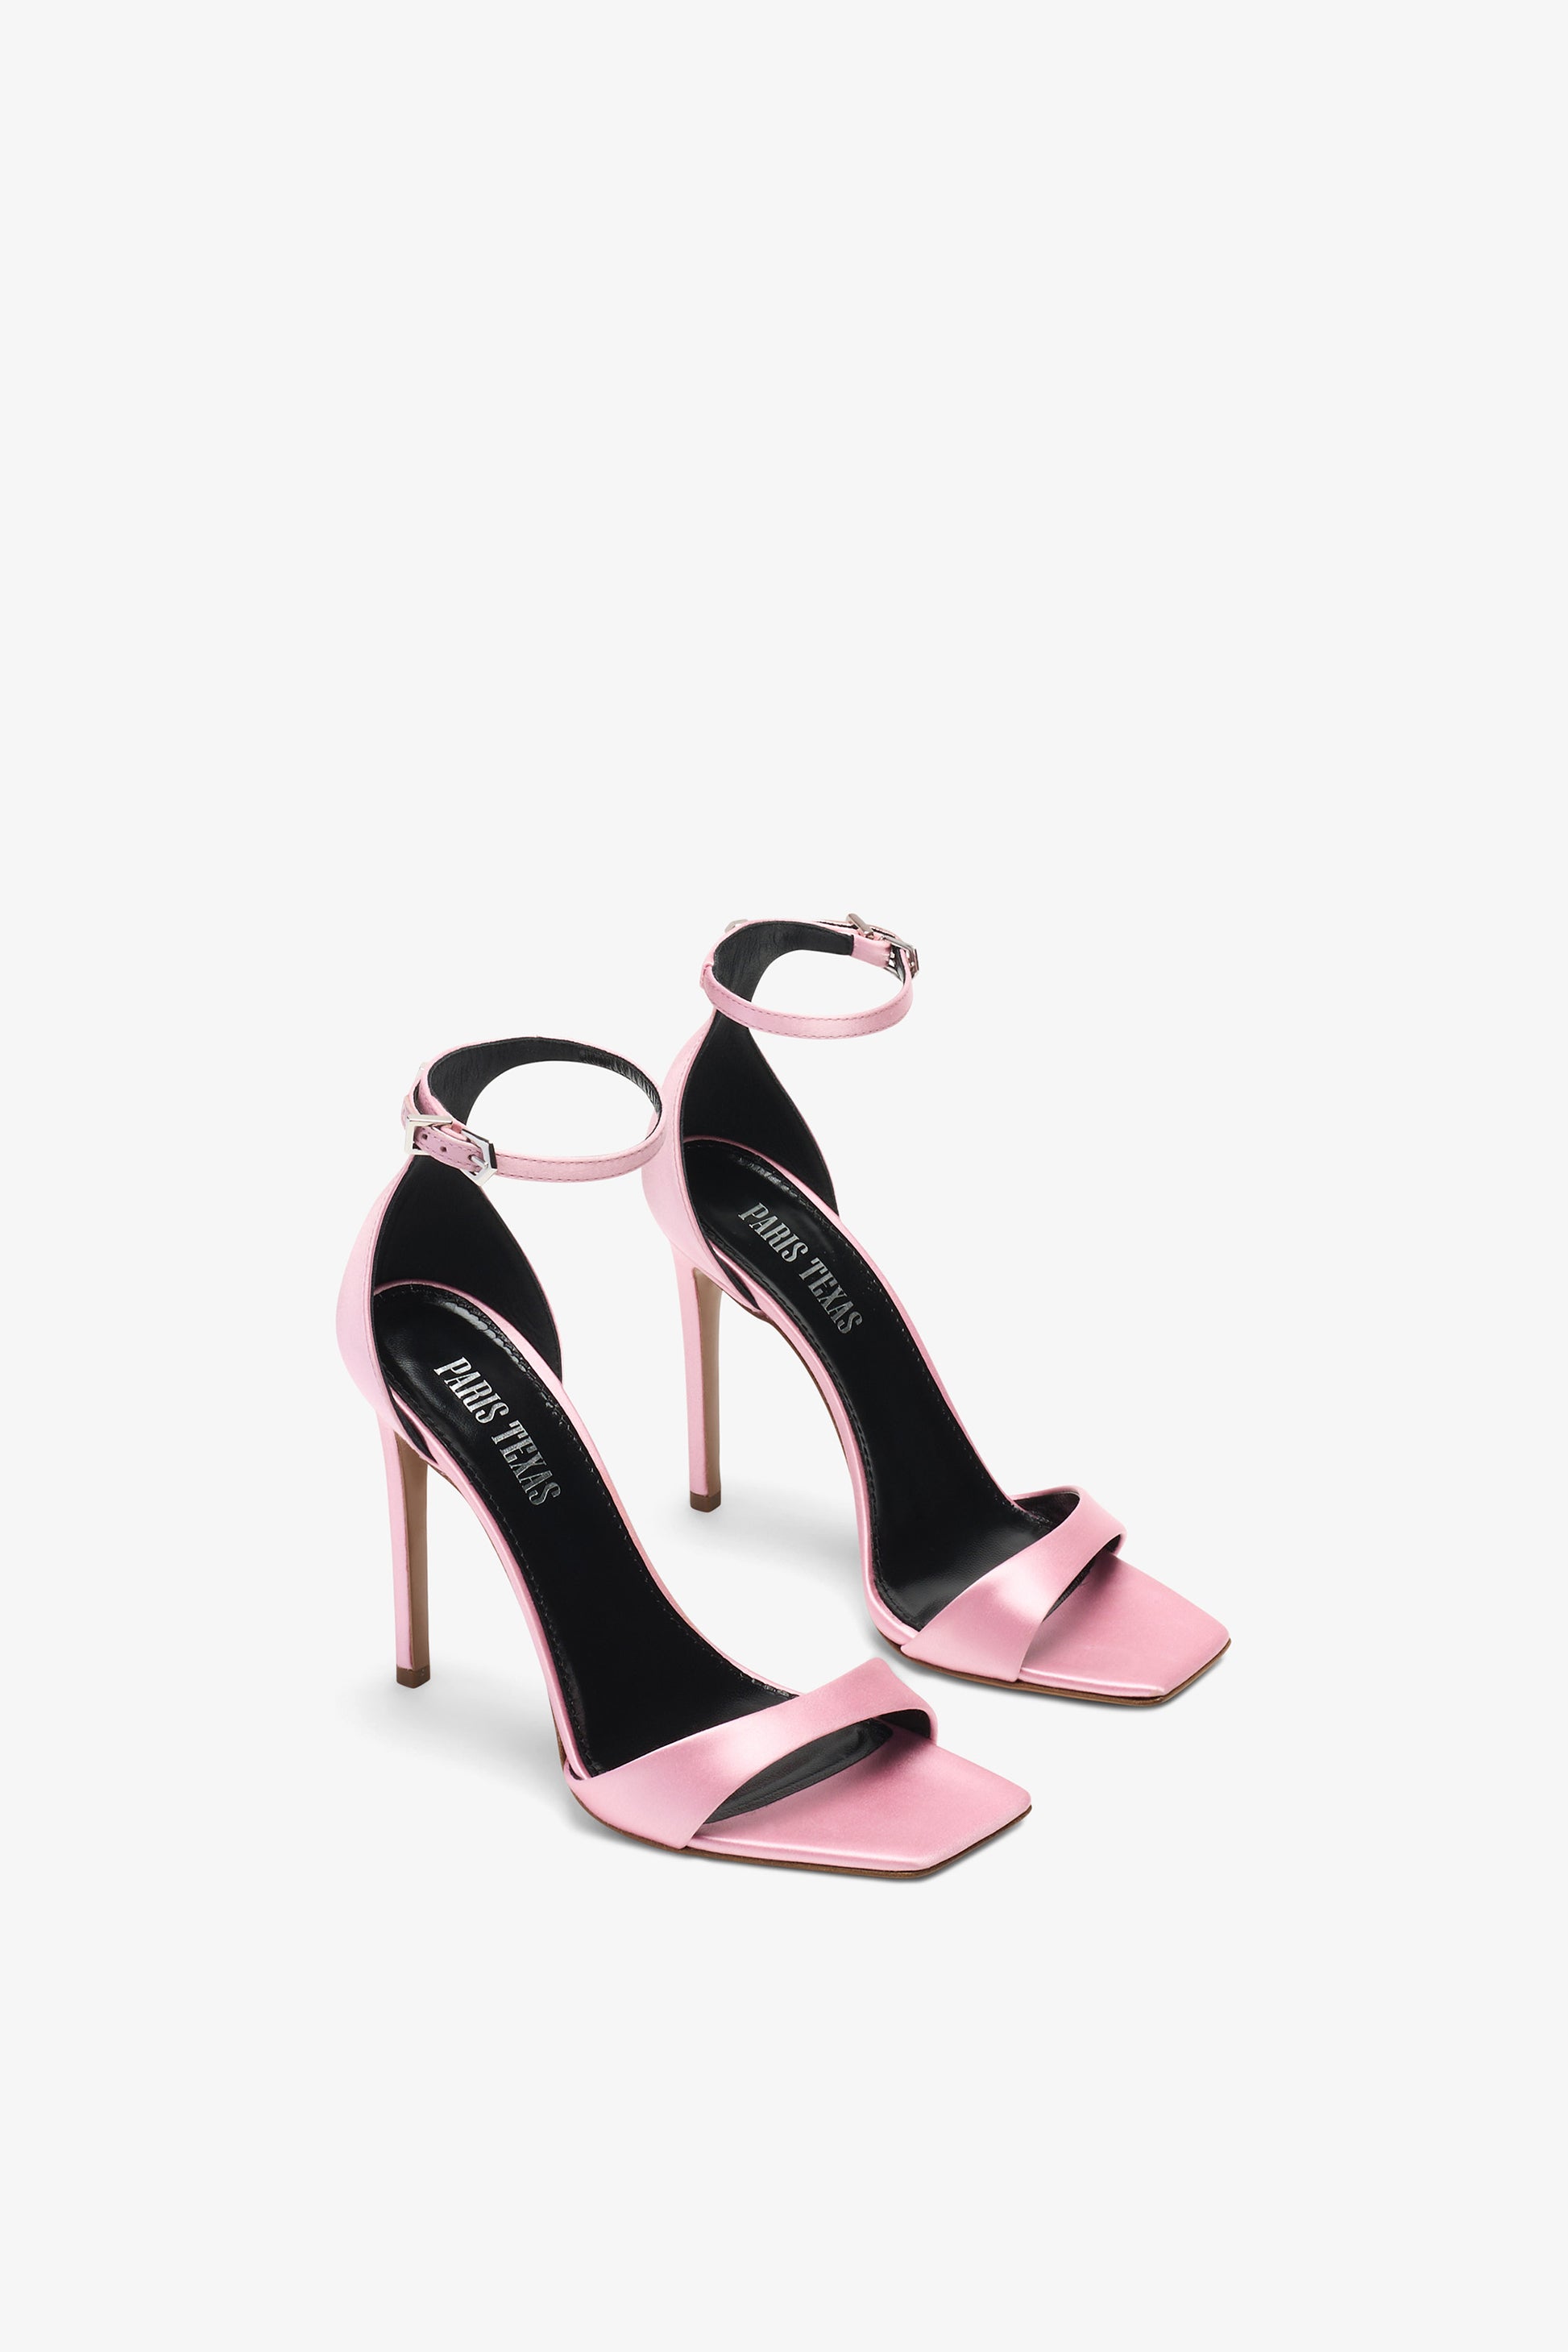 Sandalette mit Stiletto-Absatz aus gl"anzend rosafarbenem Leder